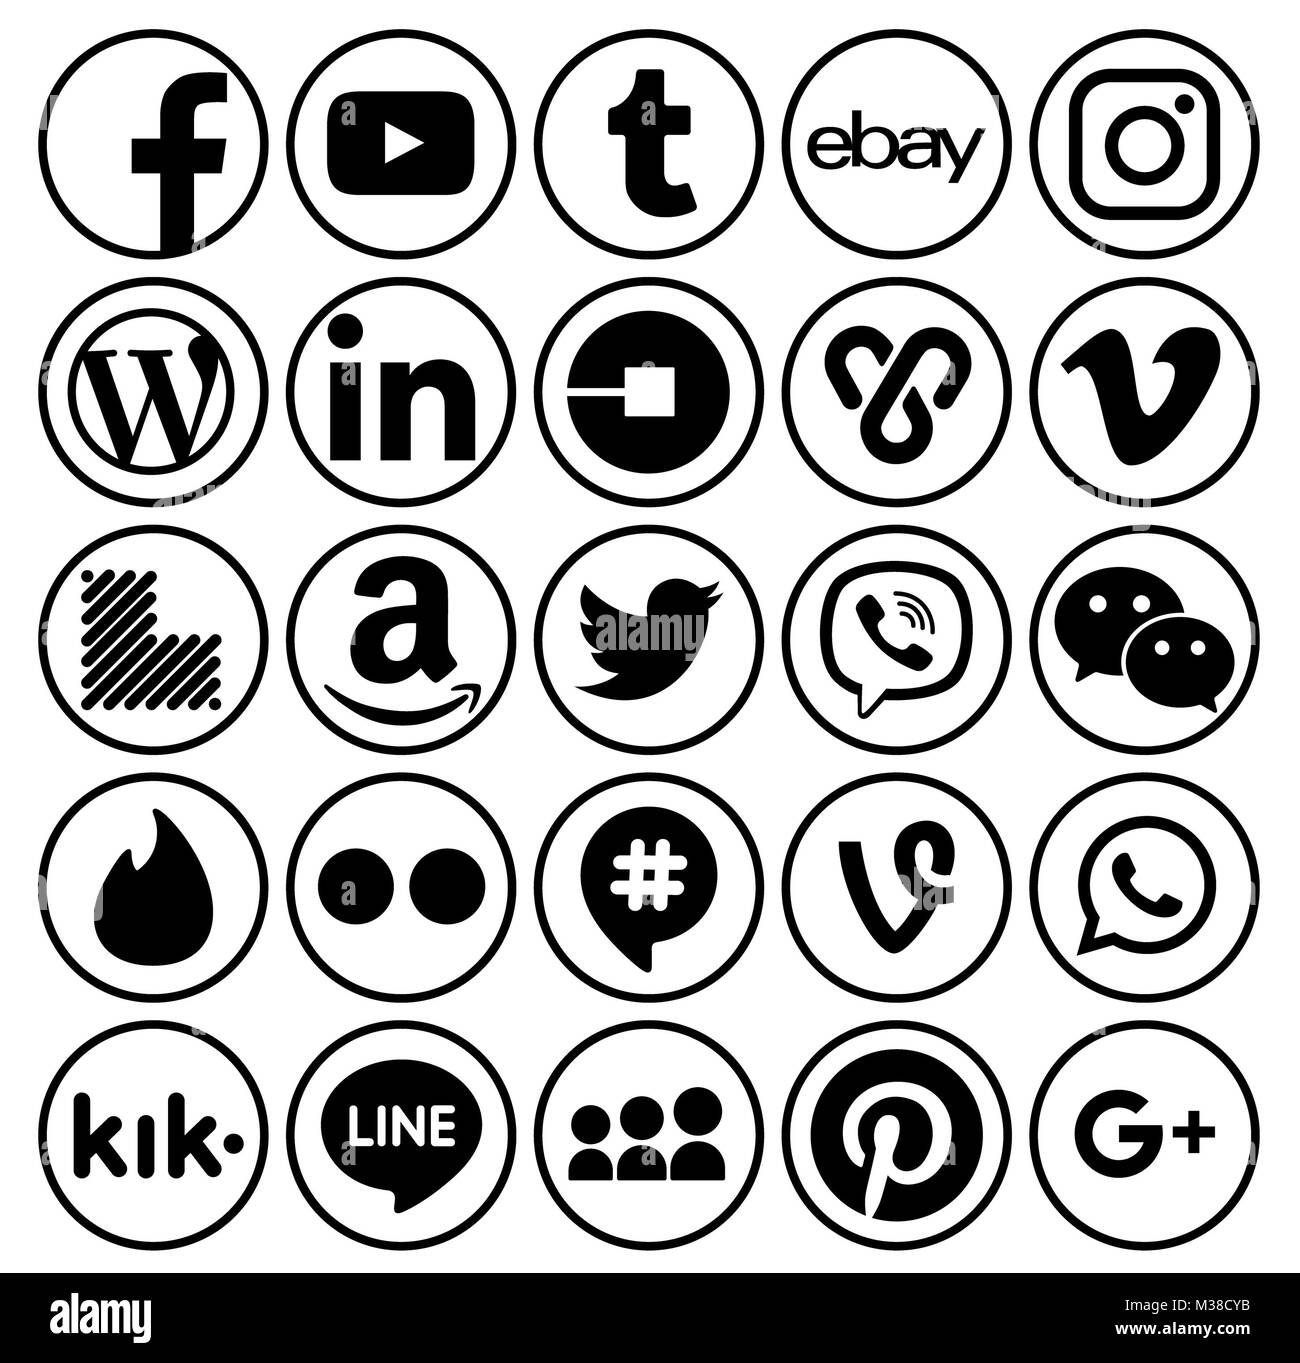 Kiev, Ukraine - 11 septembre 2017 : Collection de rond noir populaire social media icons, imprimée sur du papier : Facebook, Twitter, Google Plus, Instagram, Banque D'Images